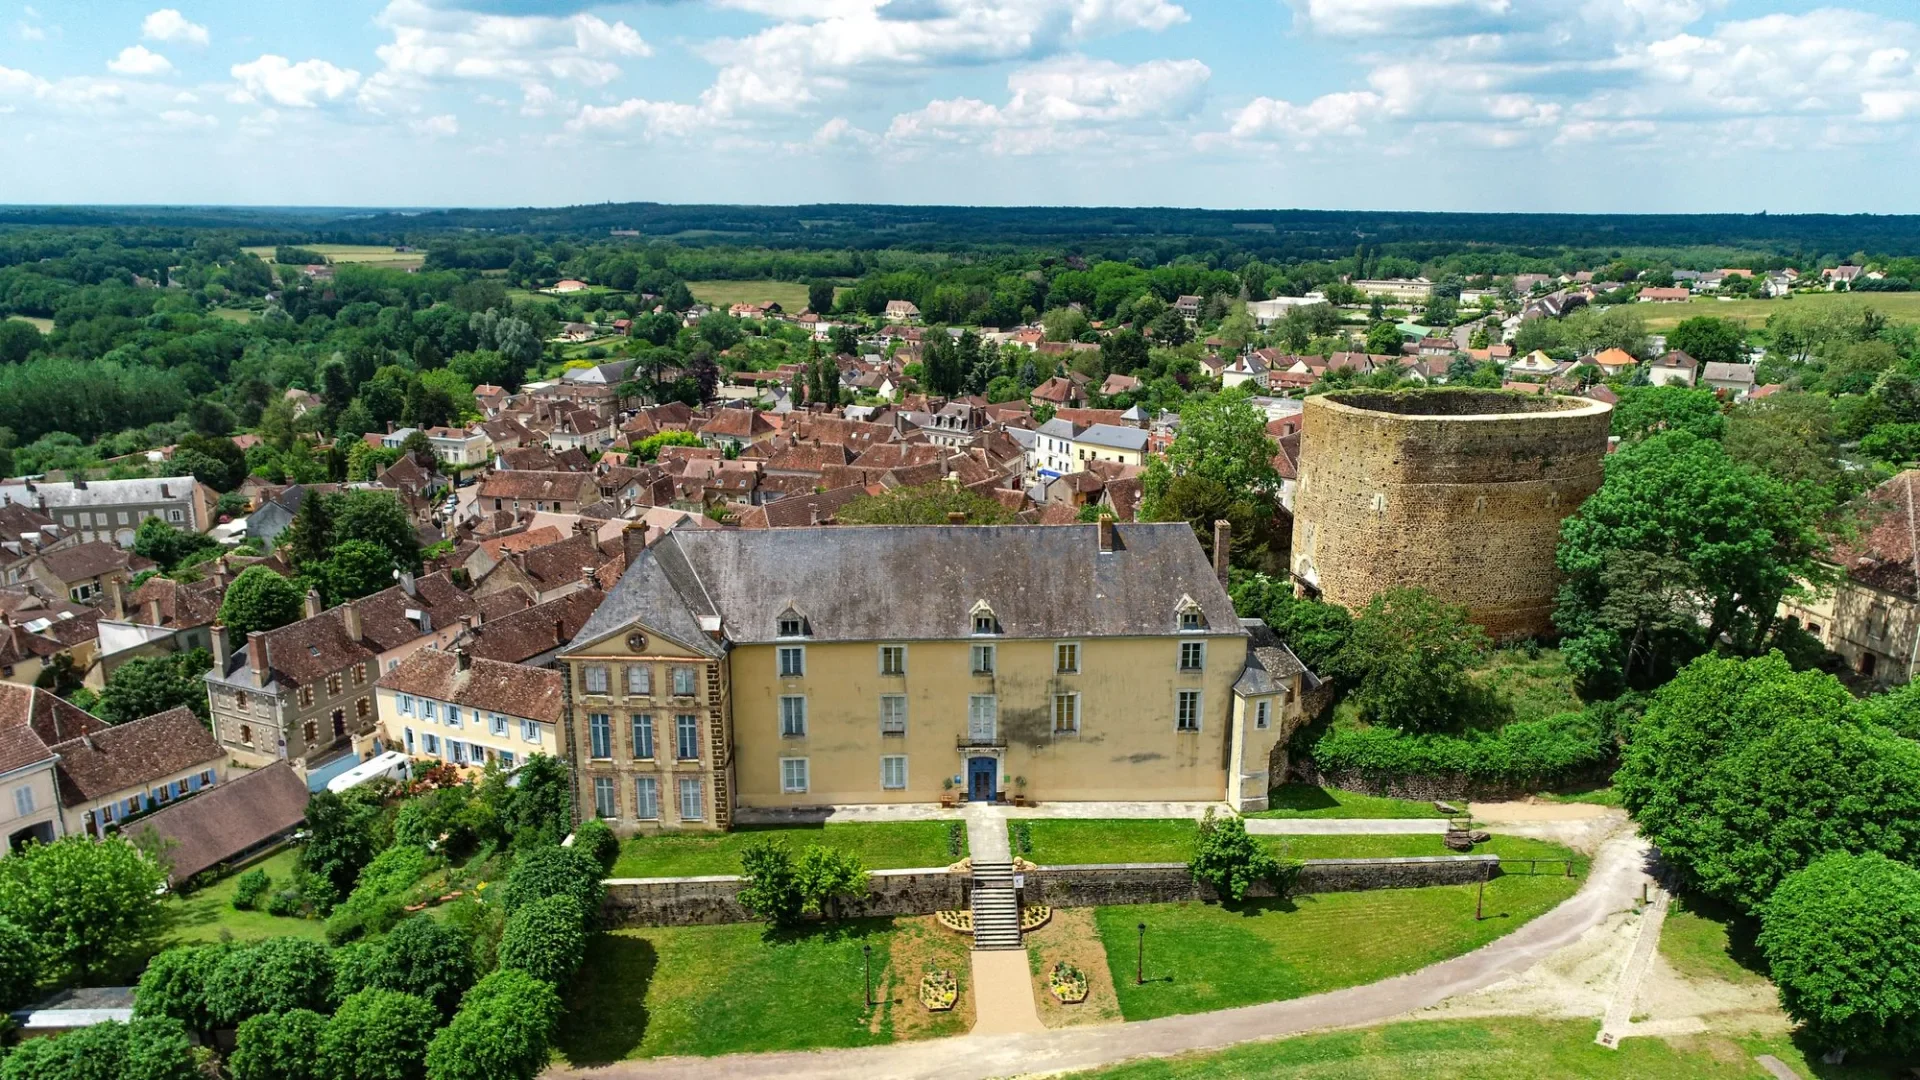 Saint-Sauveur-en-Puisaye its castle and its Sarrasine tower